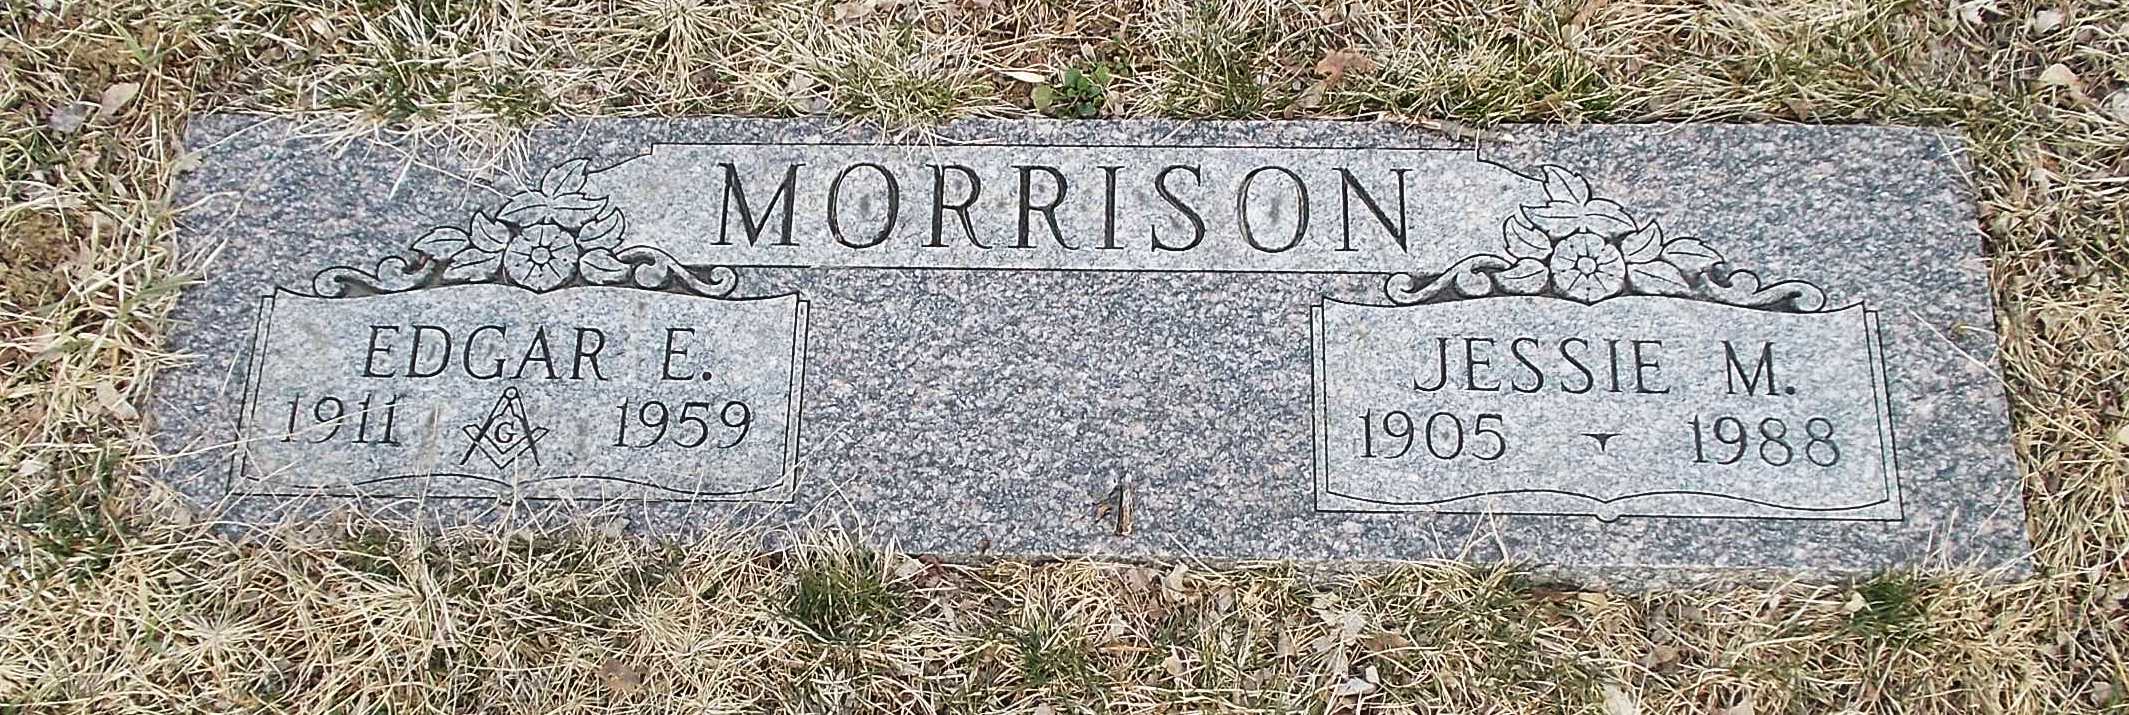 Edgar E Morrison